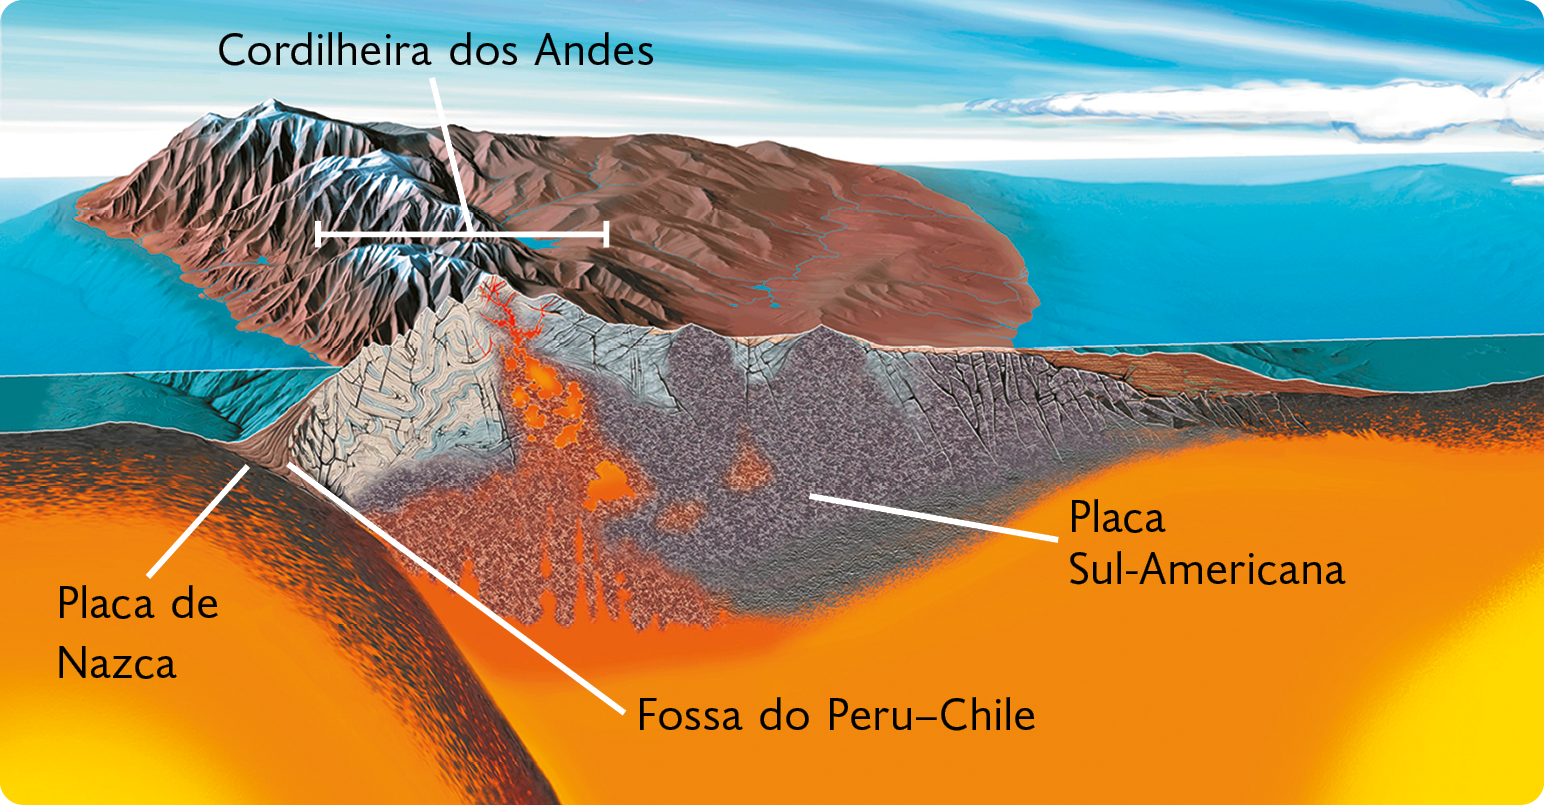 Esquema. A Cordilheira dos Andes sobre a placa Sul-Americana. À esquerda, submersa, está a Placa de Nazca, com a Fossa do Peru-Chile ao lado dela. Há magma subindo em direção às montanhas, na placa Sul-Americana.